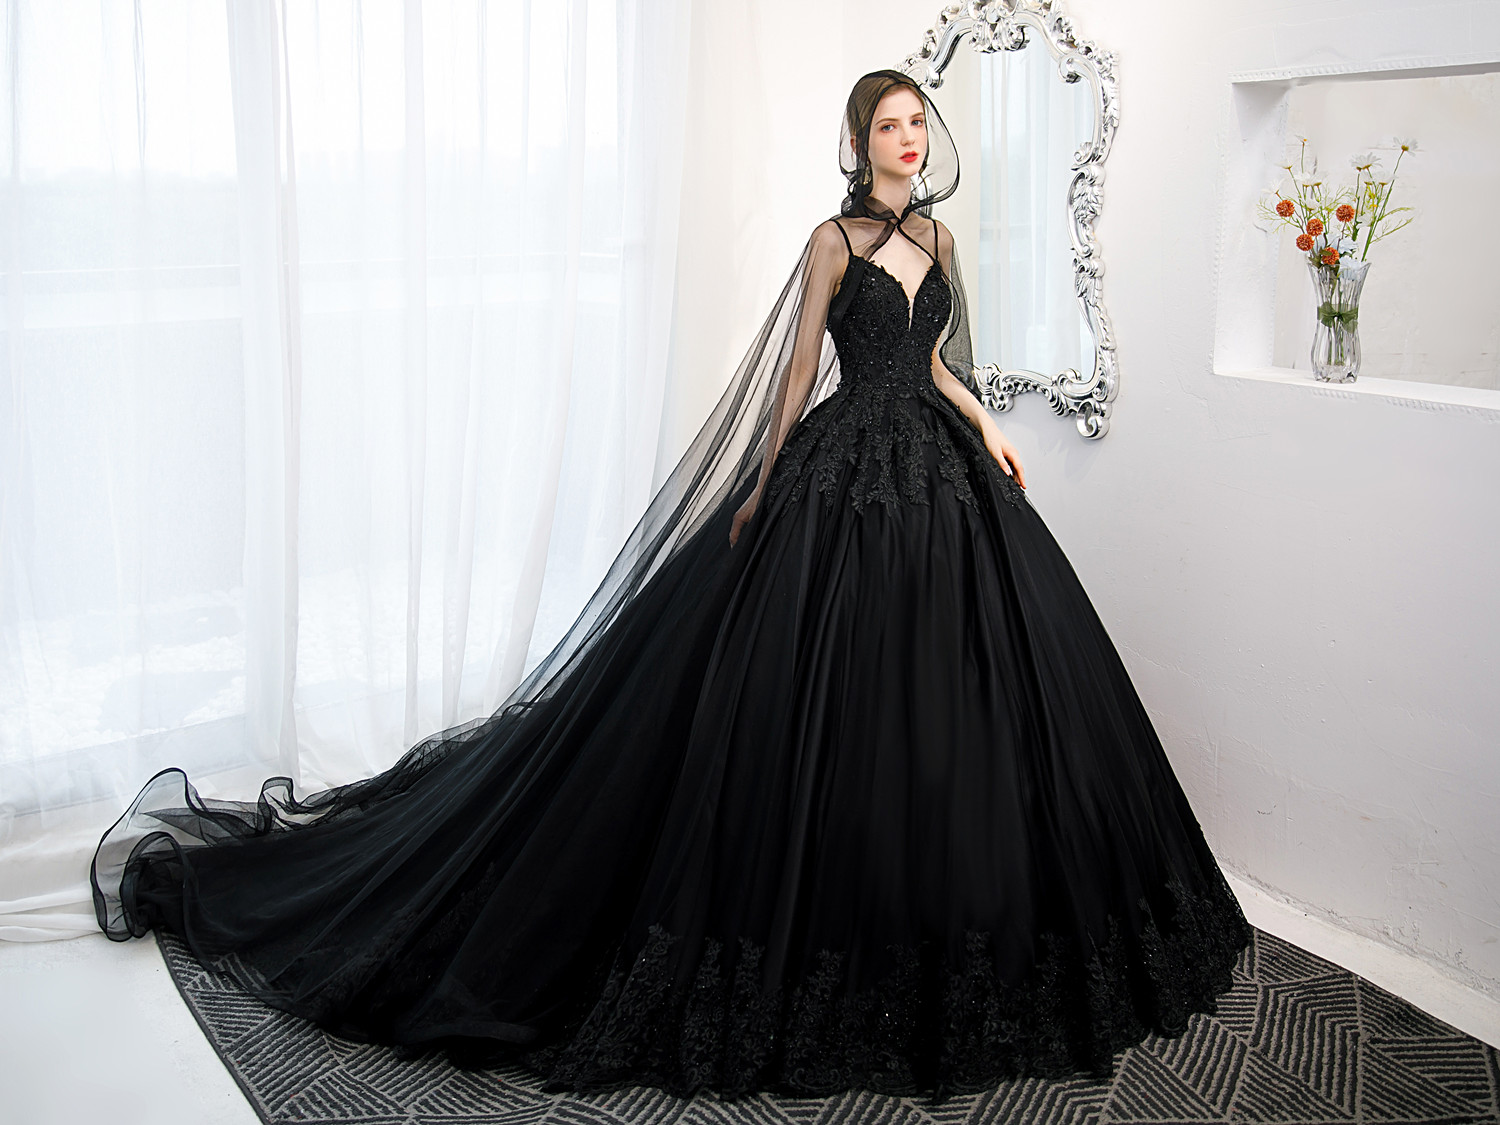 Black dress | Long gown dress, Party wear dresses, Long gown design